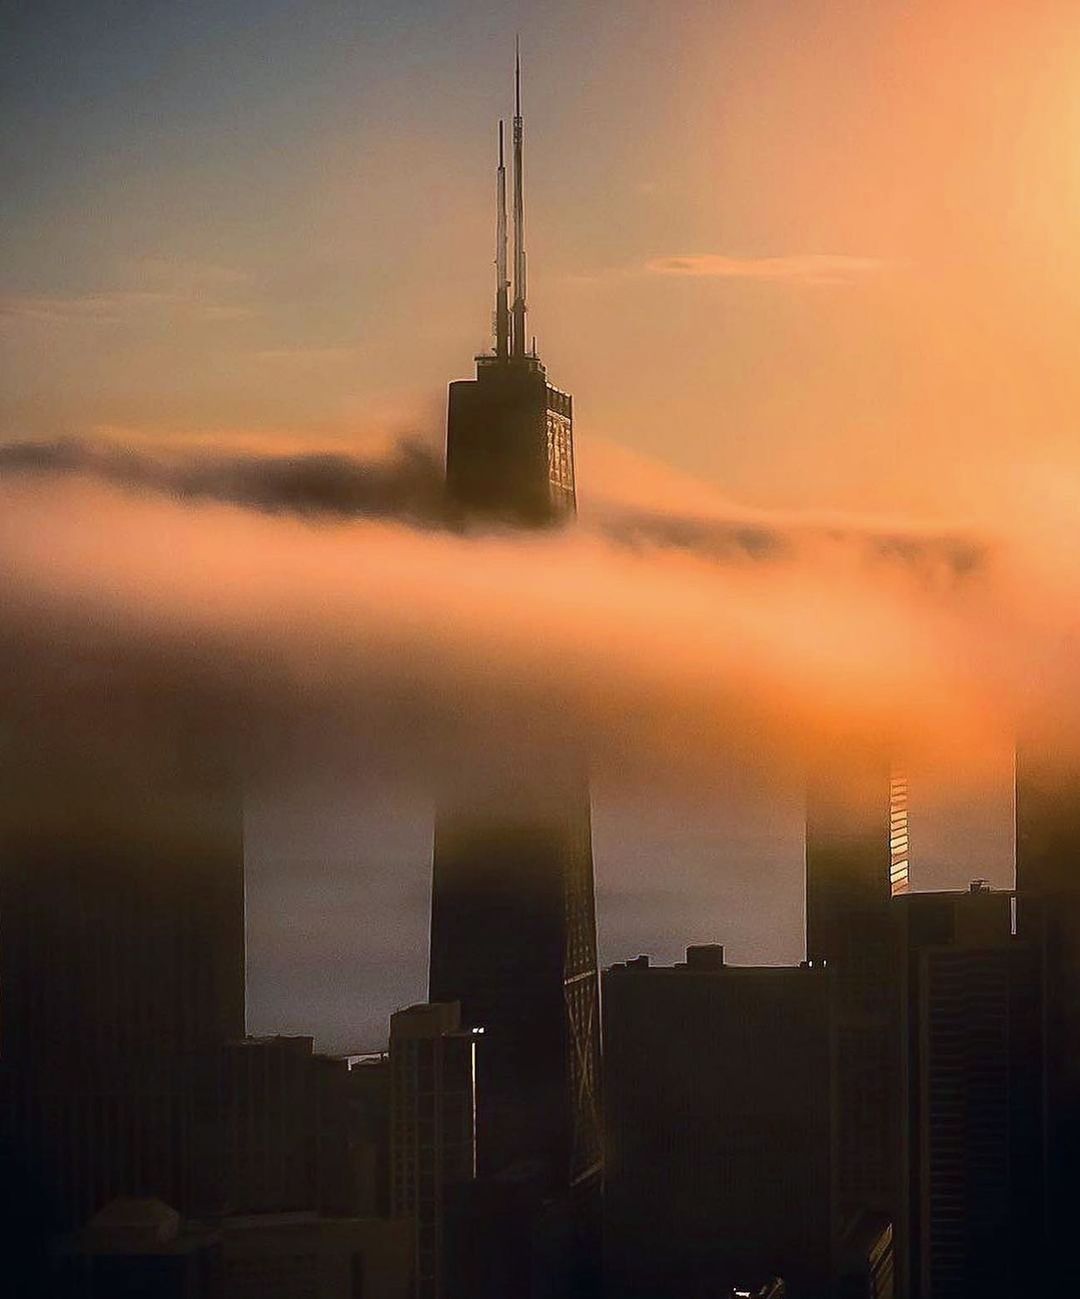 Городские и уличные снимки Чикаго от Эрика Марталера